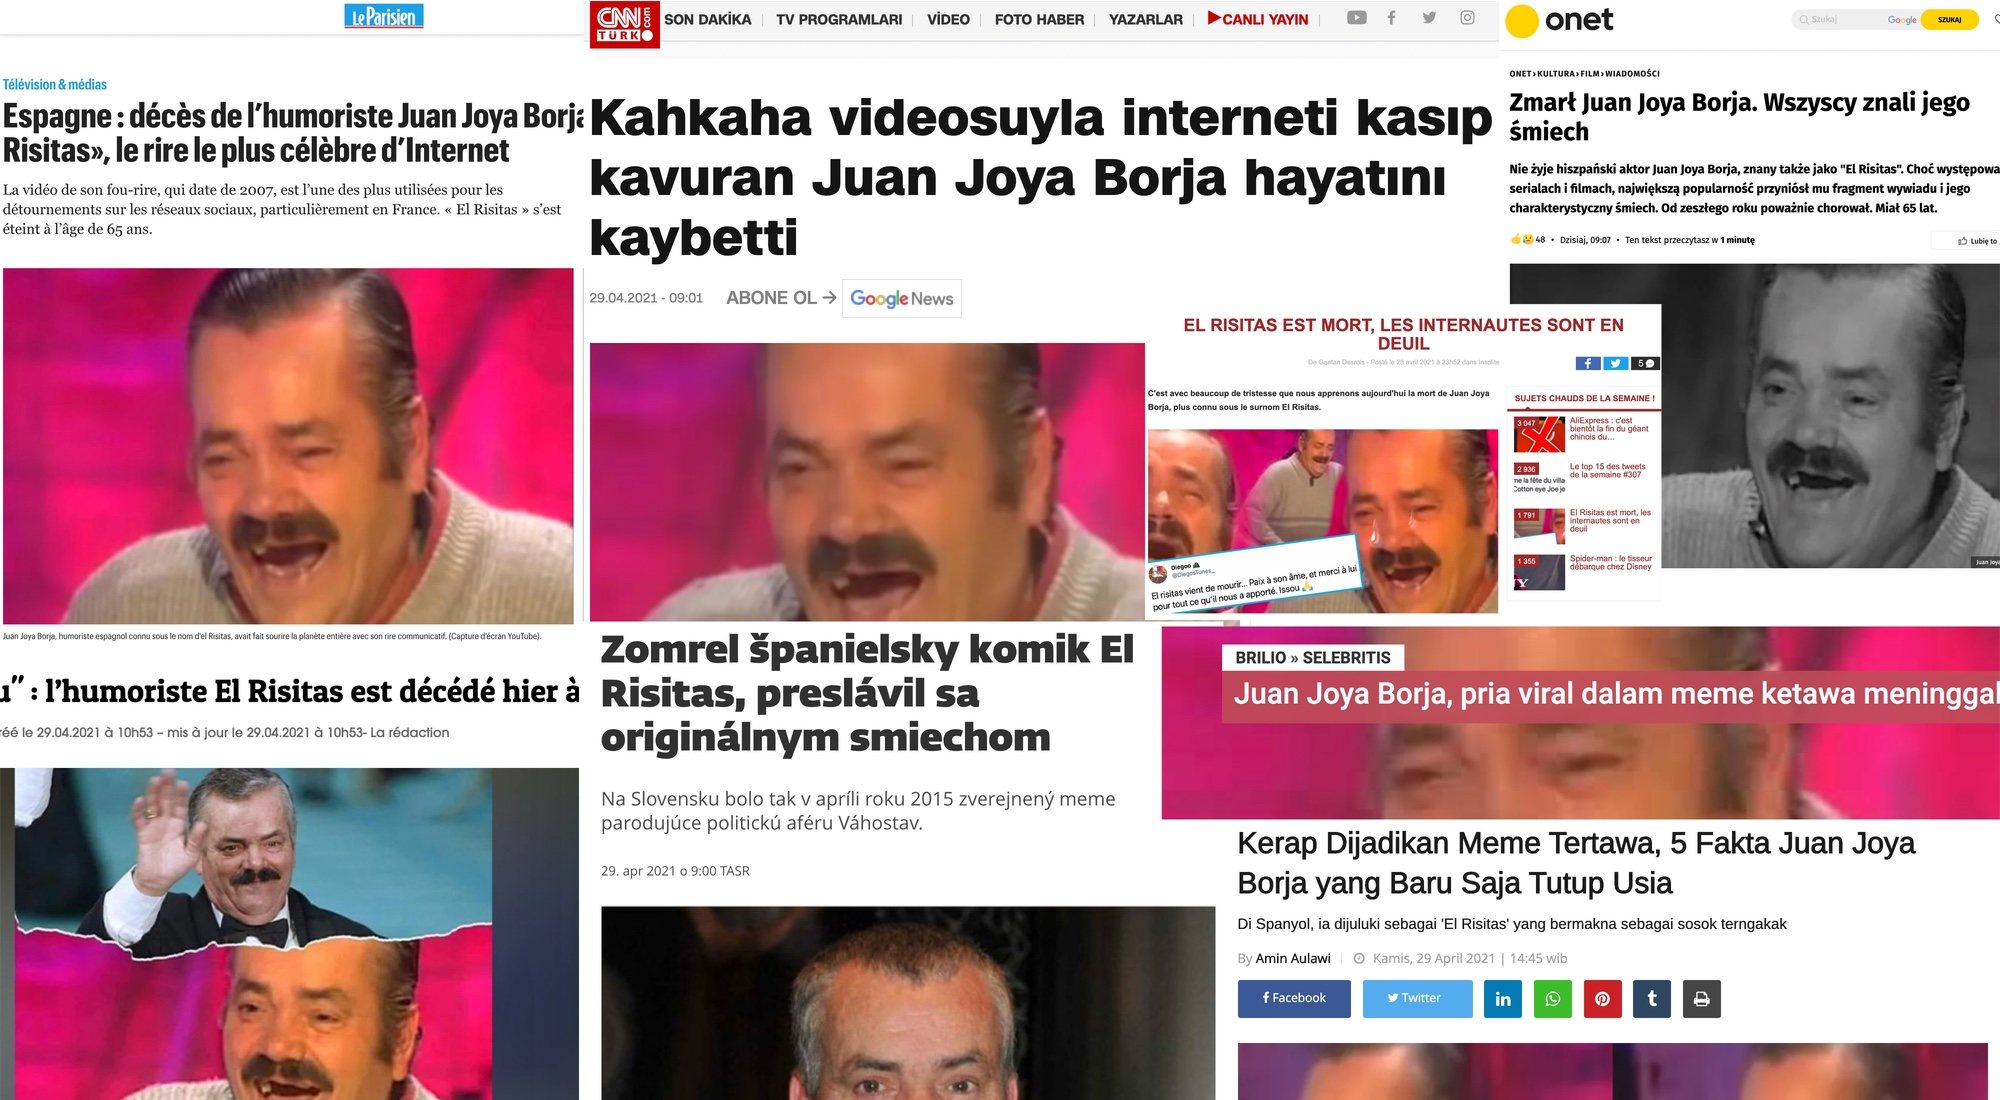 Titulares de algunos medios internacionales dando la noticia de la muerte de "El Risitas"